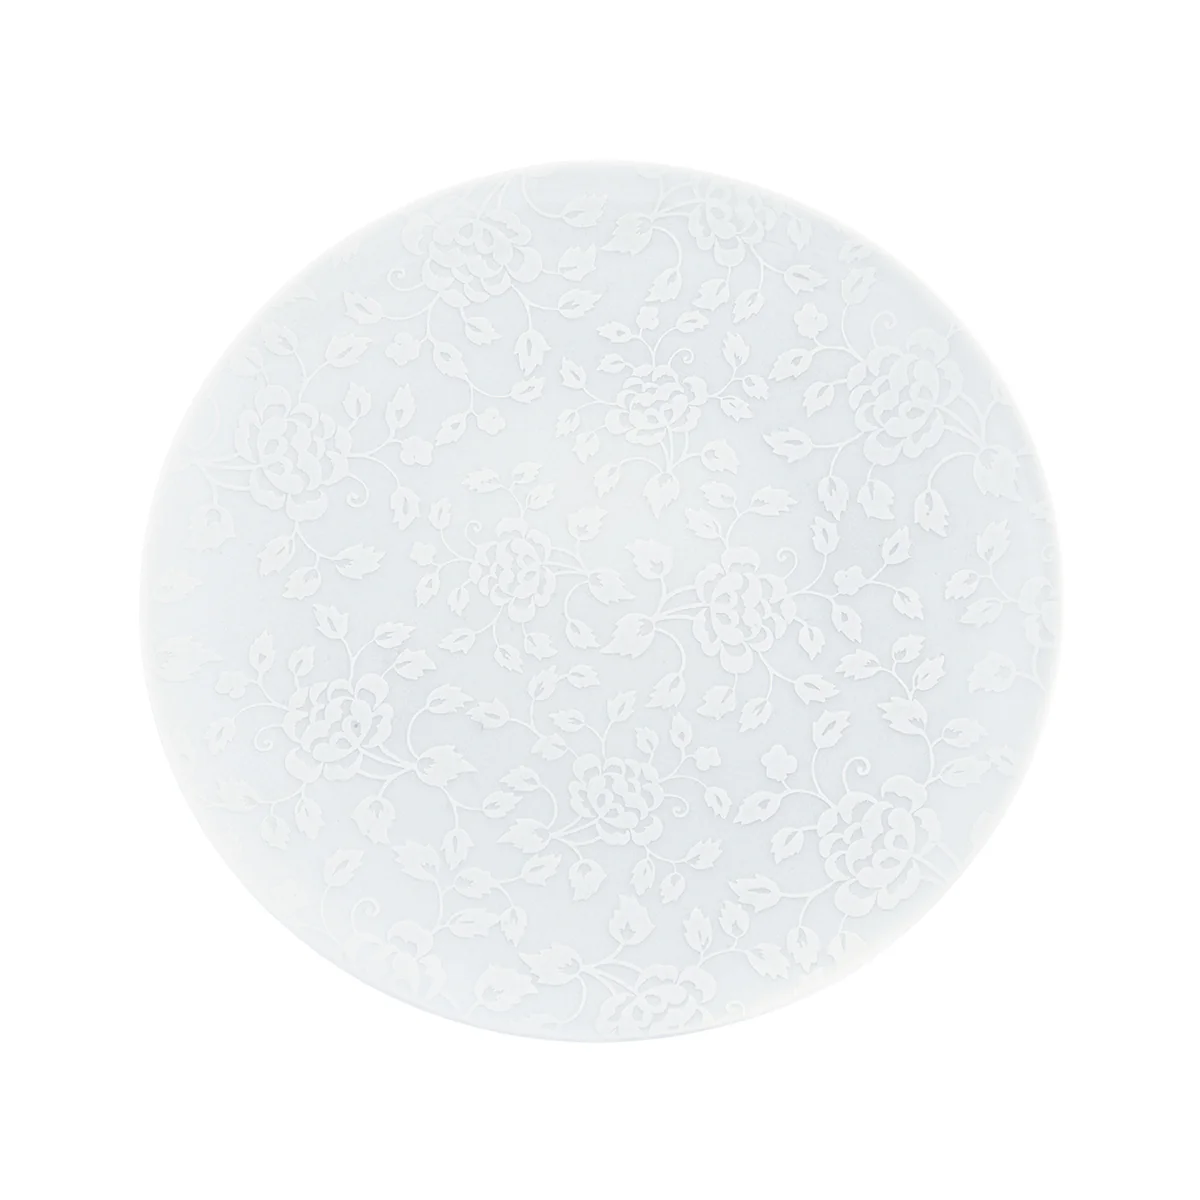 THISTLES white on white - Dinner plate